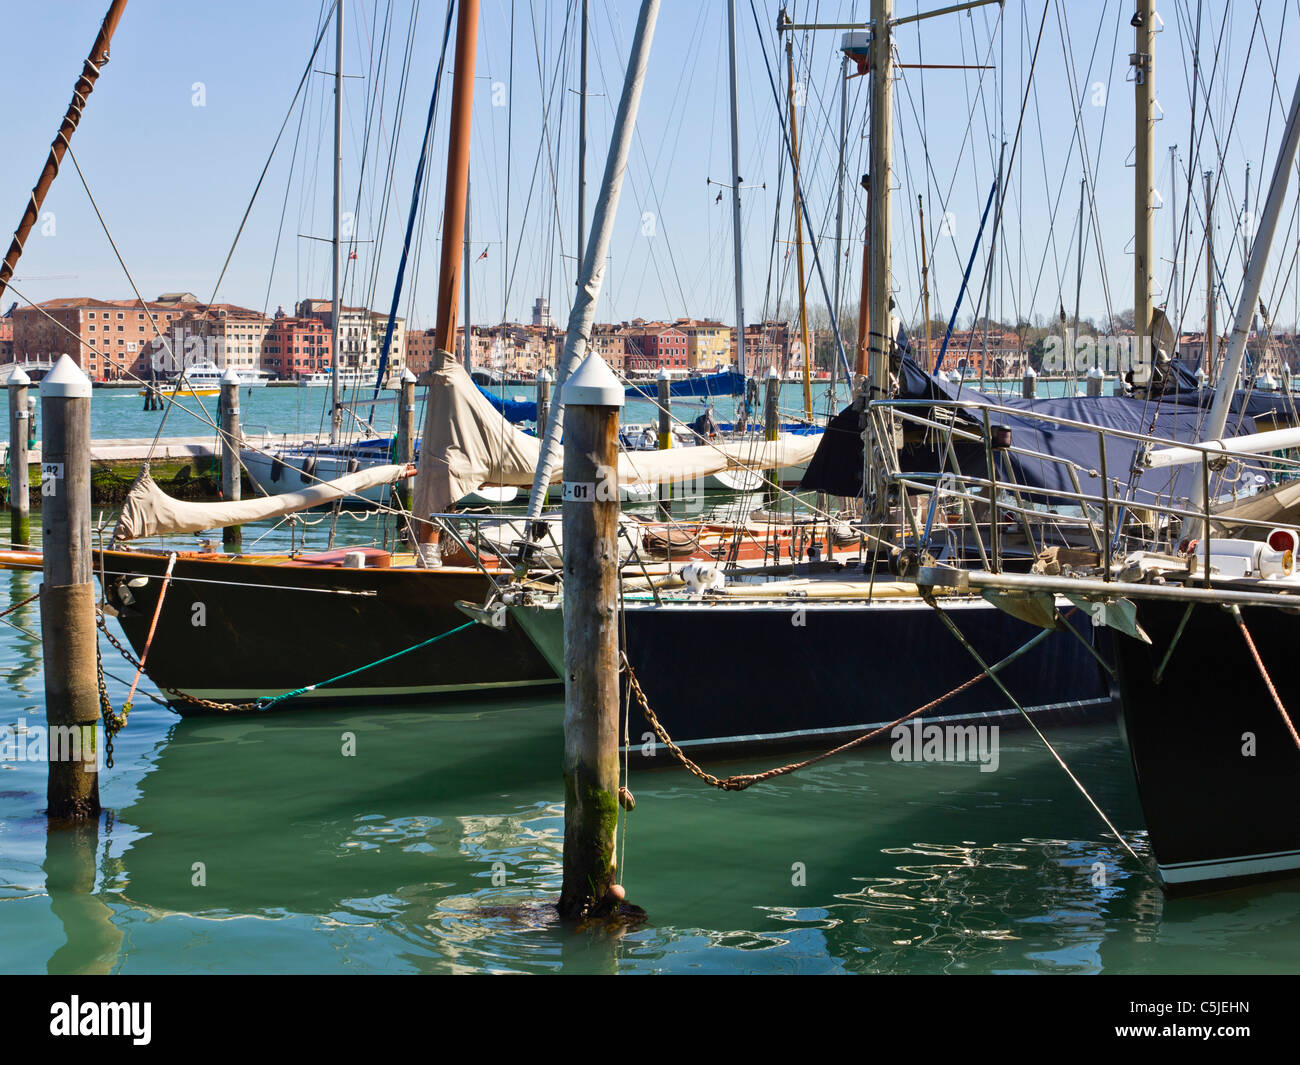 Venise ITALIE-Apr 06 2011 : Voile bateaux amarrés dans la marina sur l'île de San Giorgio Maggiore à Venise Banque D'Images